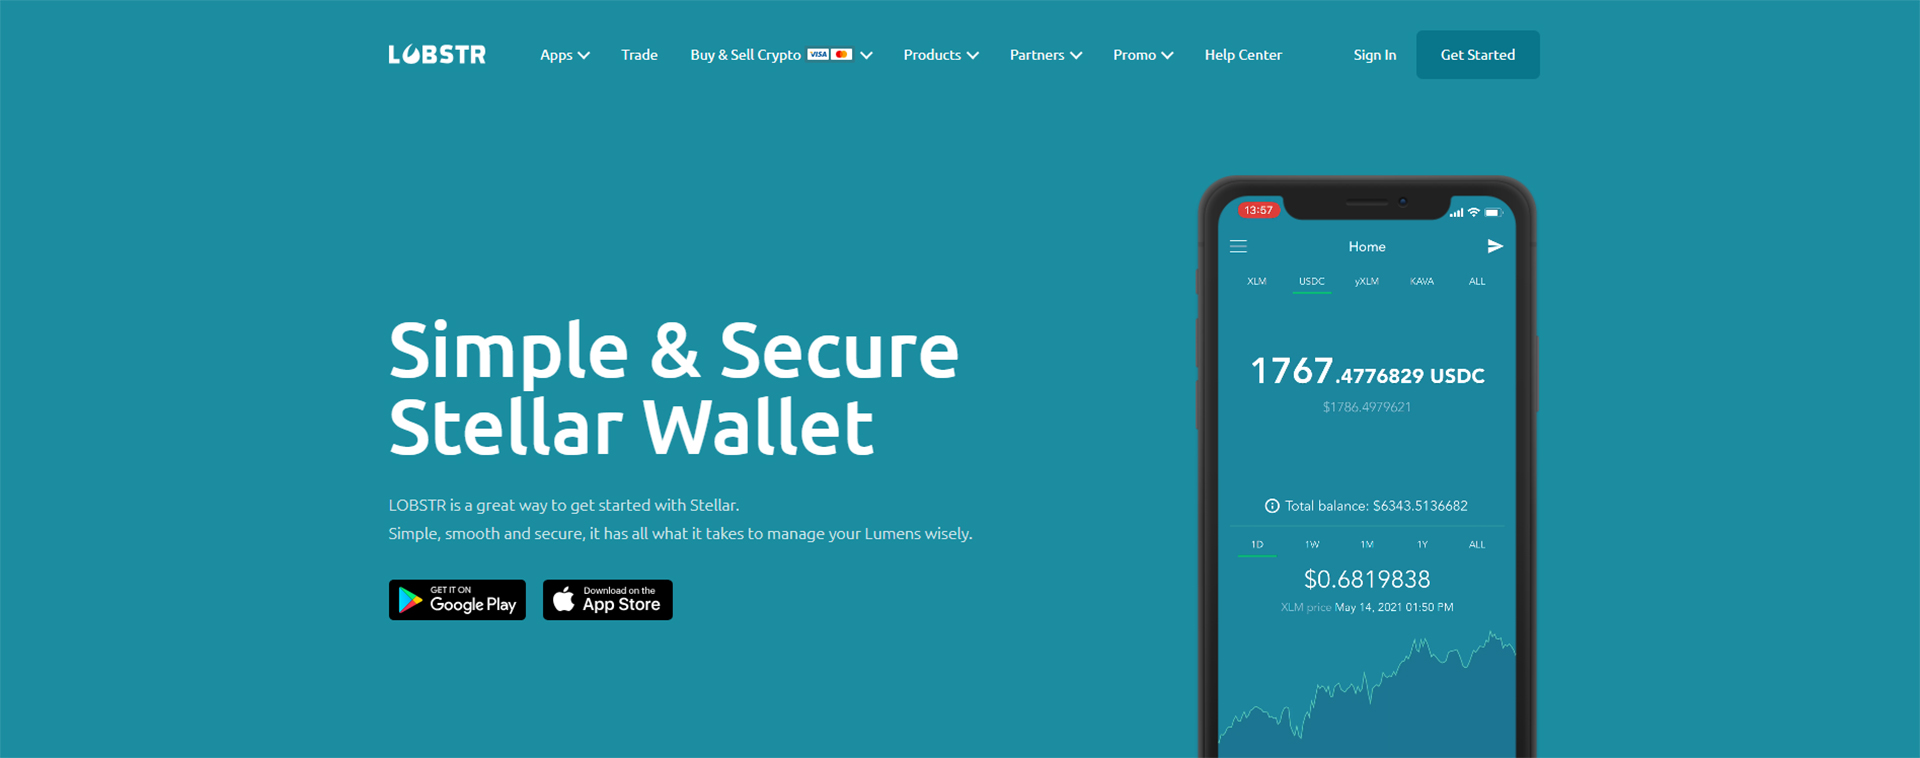 LOBSTR Wallet — Simple and Secure Stellar Wallet